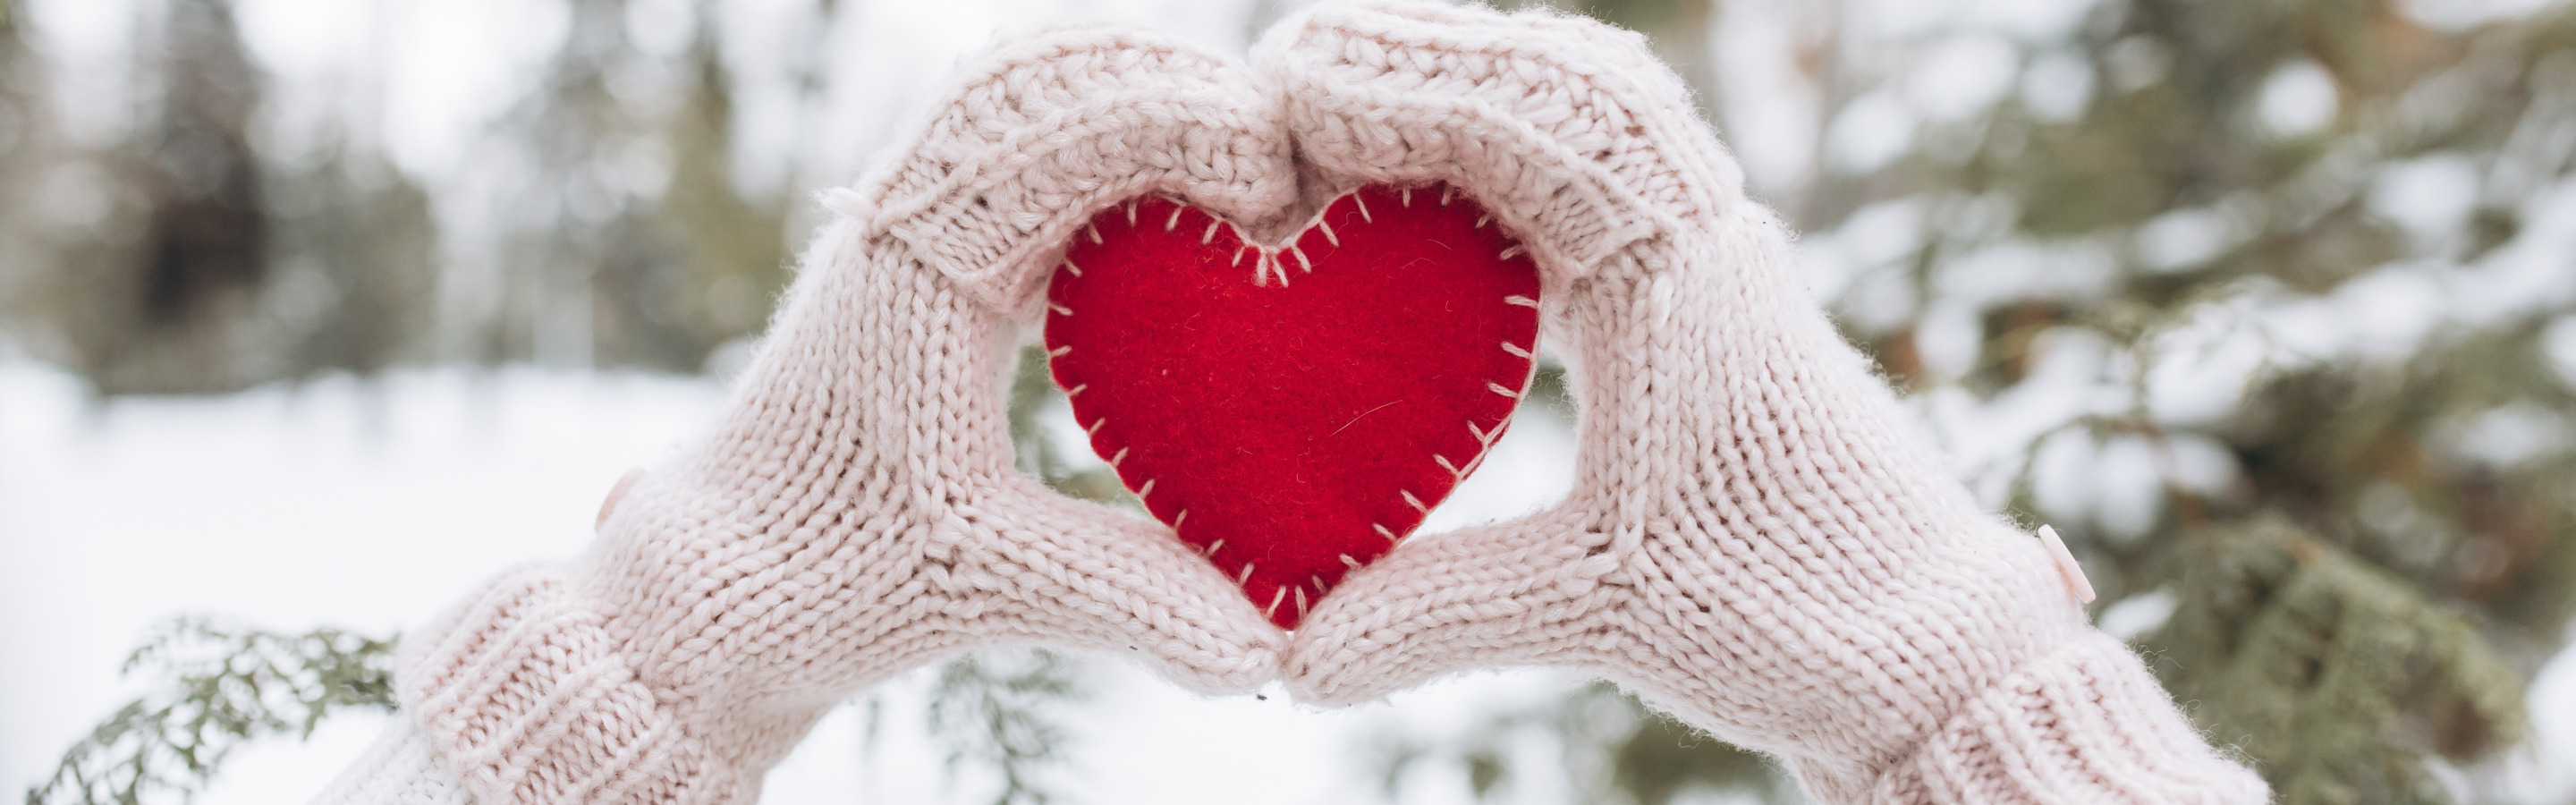 Я люблю снежку. Цветы в варежке на снегу. Заставка на рабочий стол сердечко на елке. В рукавичках снег в виде сердца. Обои снежные розовое сердце и ель.